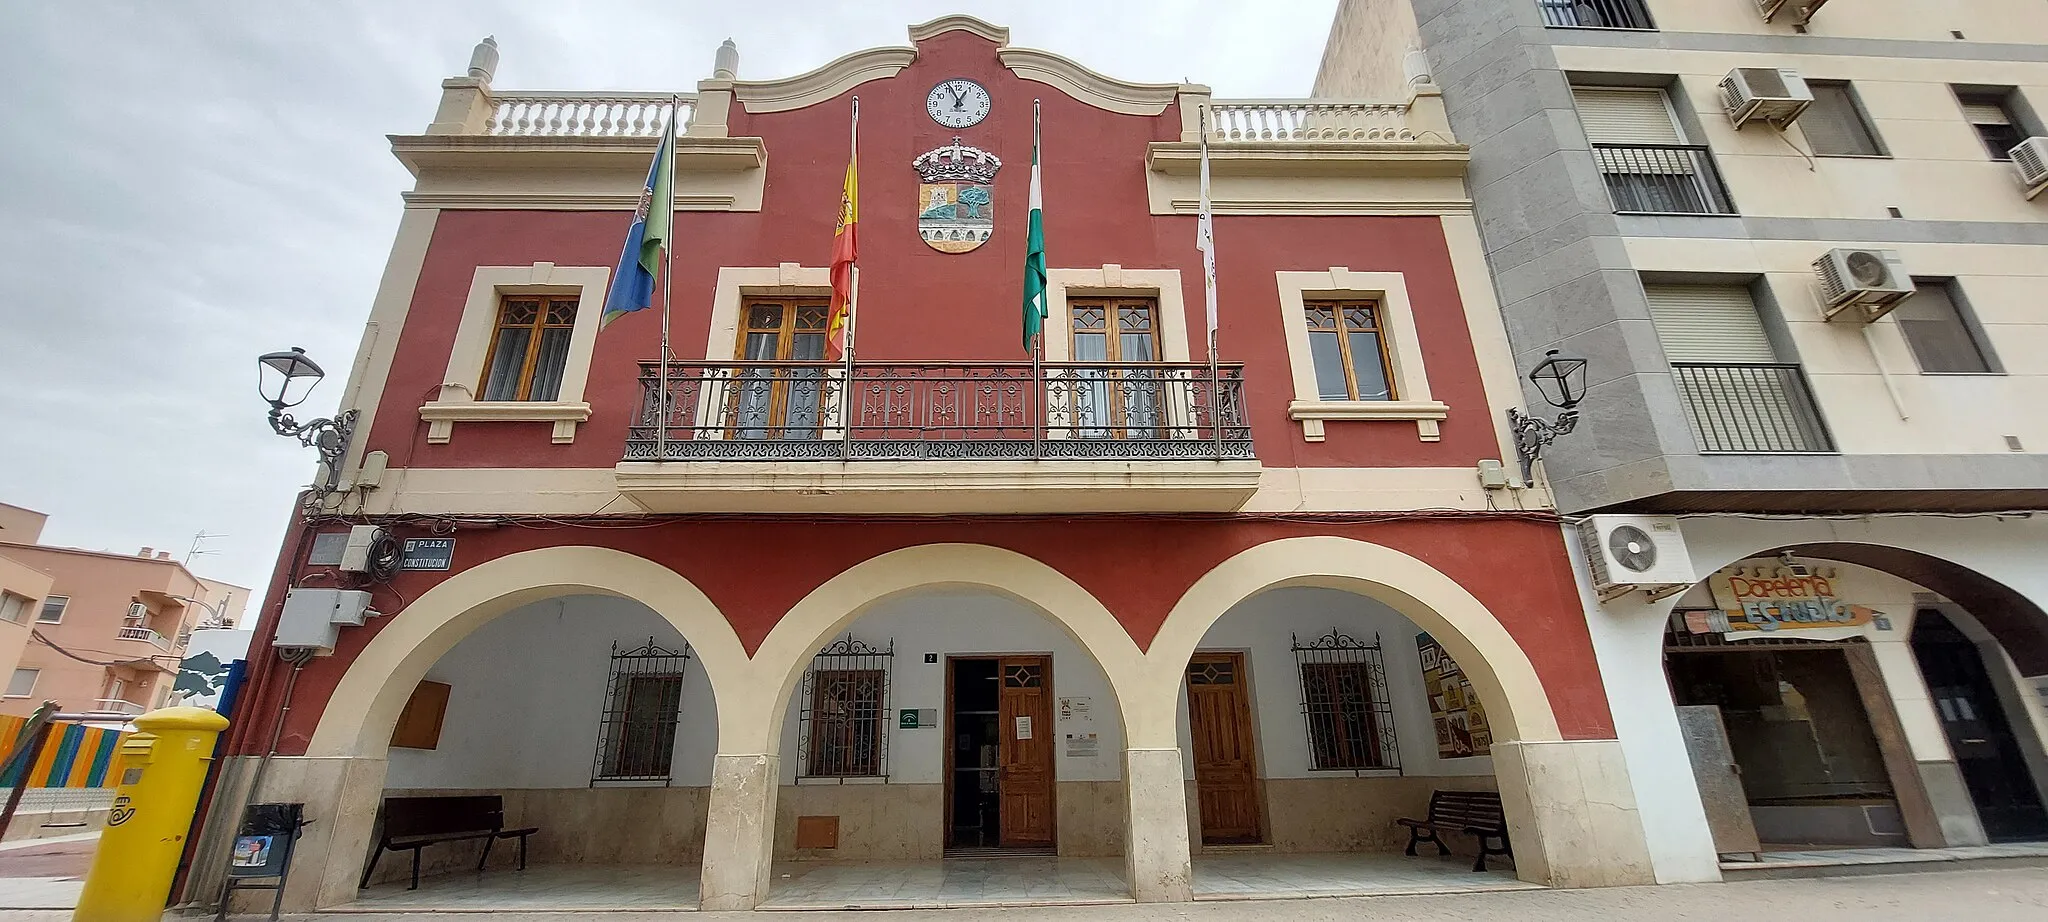 Photo showing: Casa consistorial situad en el municipio de Viator, Almería. Hecha en el proyecto Escuela de Wikicronistas